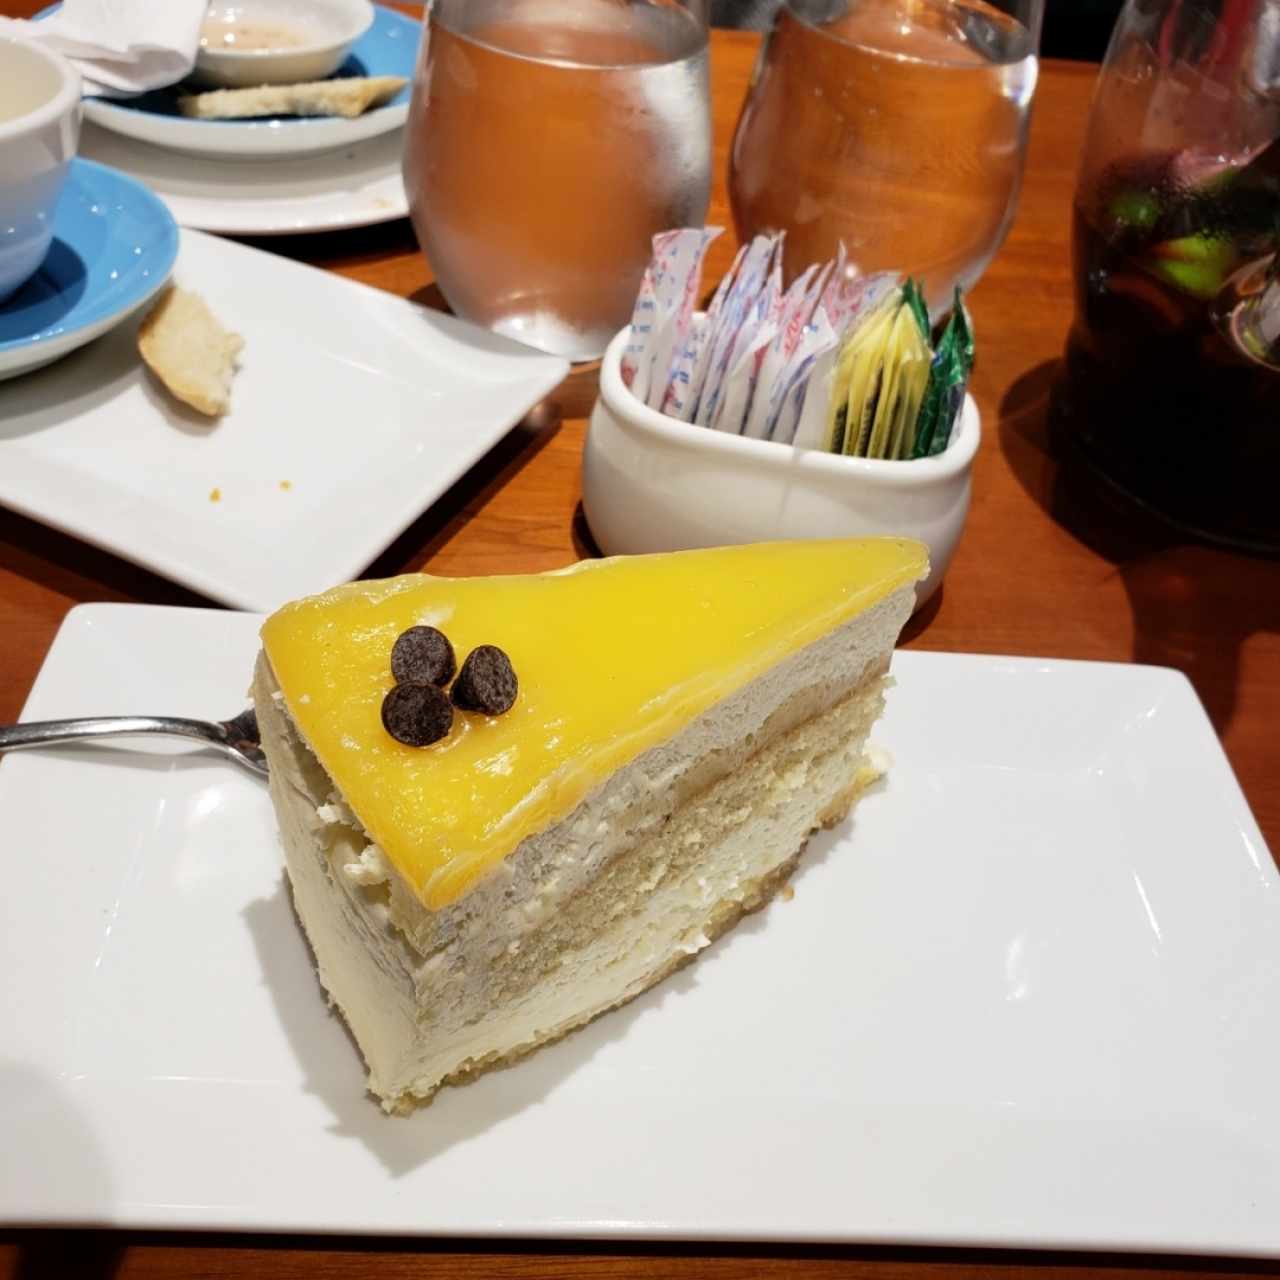 cheesecake de limón